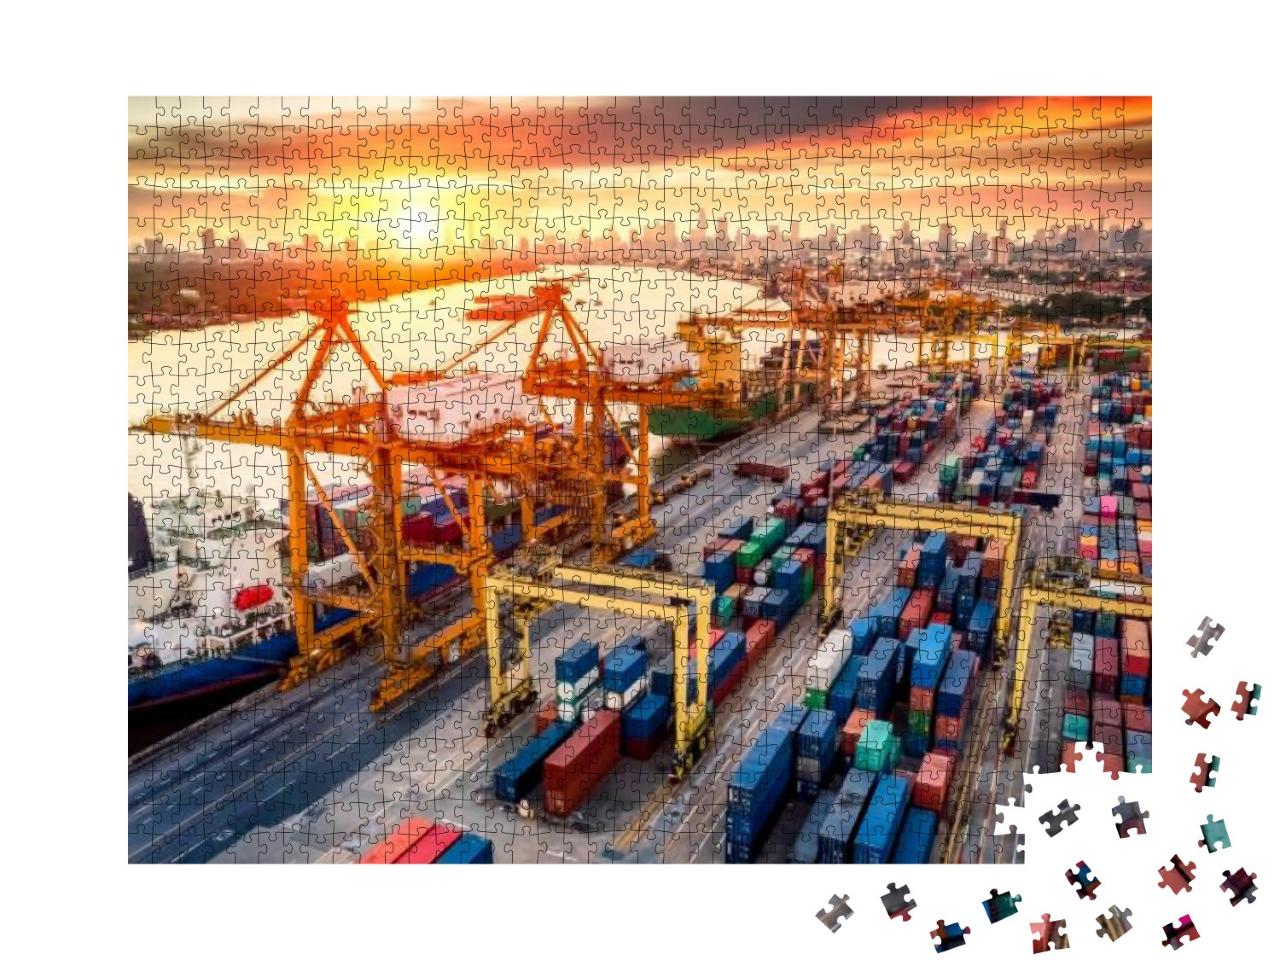 Puzzle 1000 Teile „Kranbrücken am Containerhafen bei Sonnenaufgang“